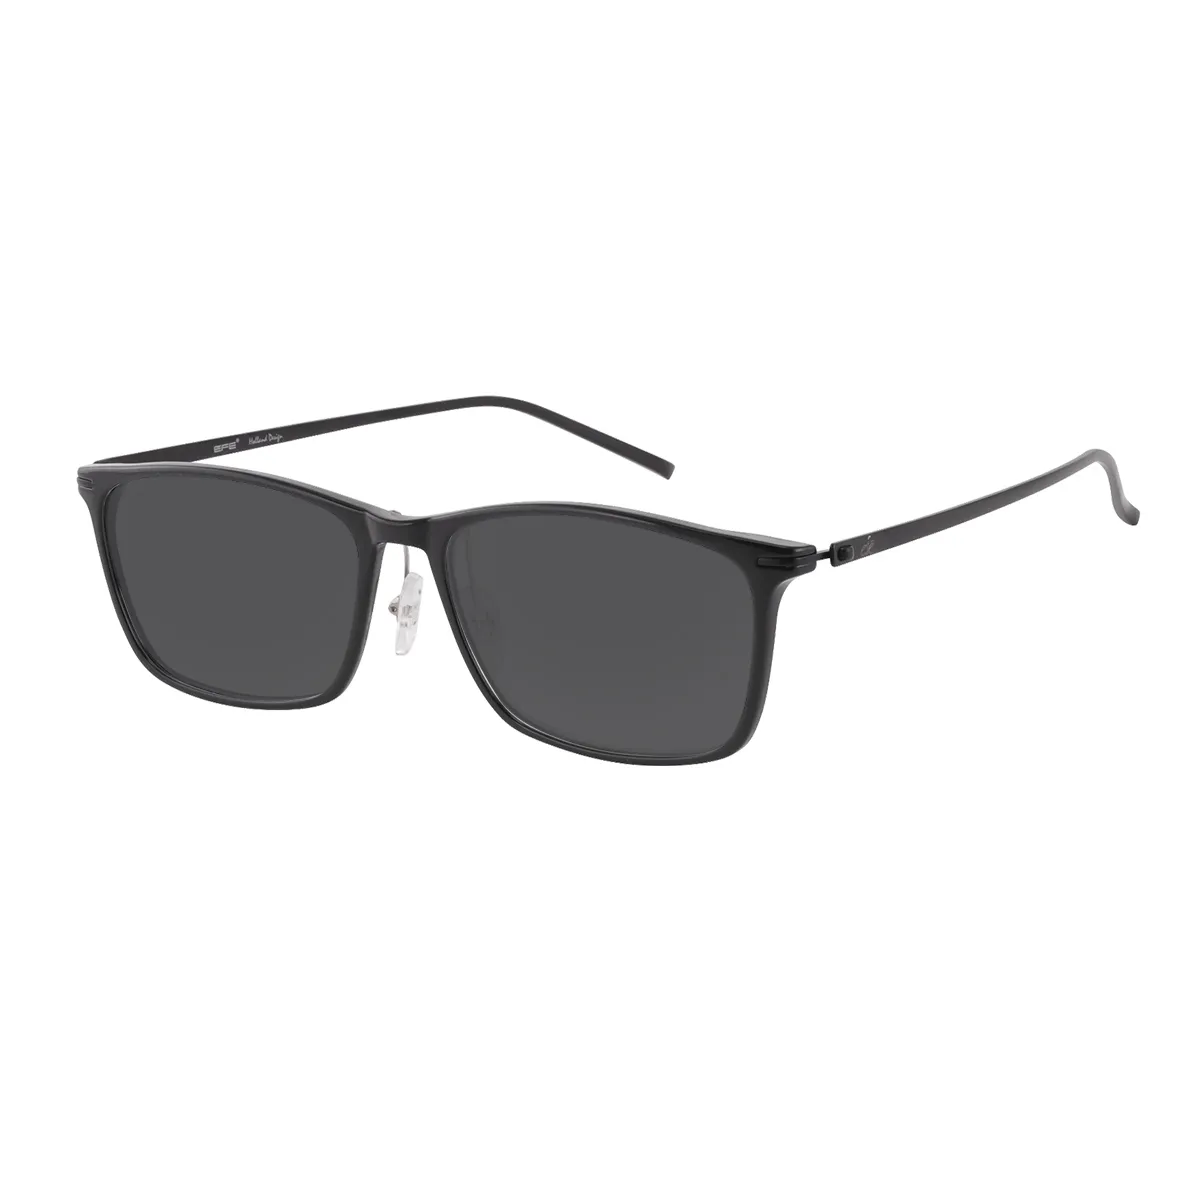 Bobbie - Rectangle Black Sunglasses for Men & Women